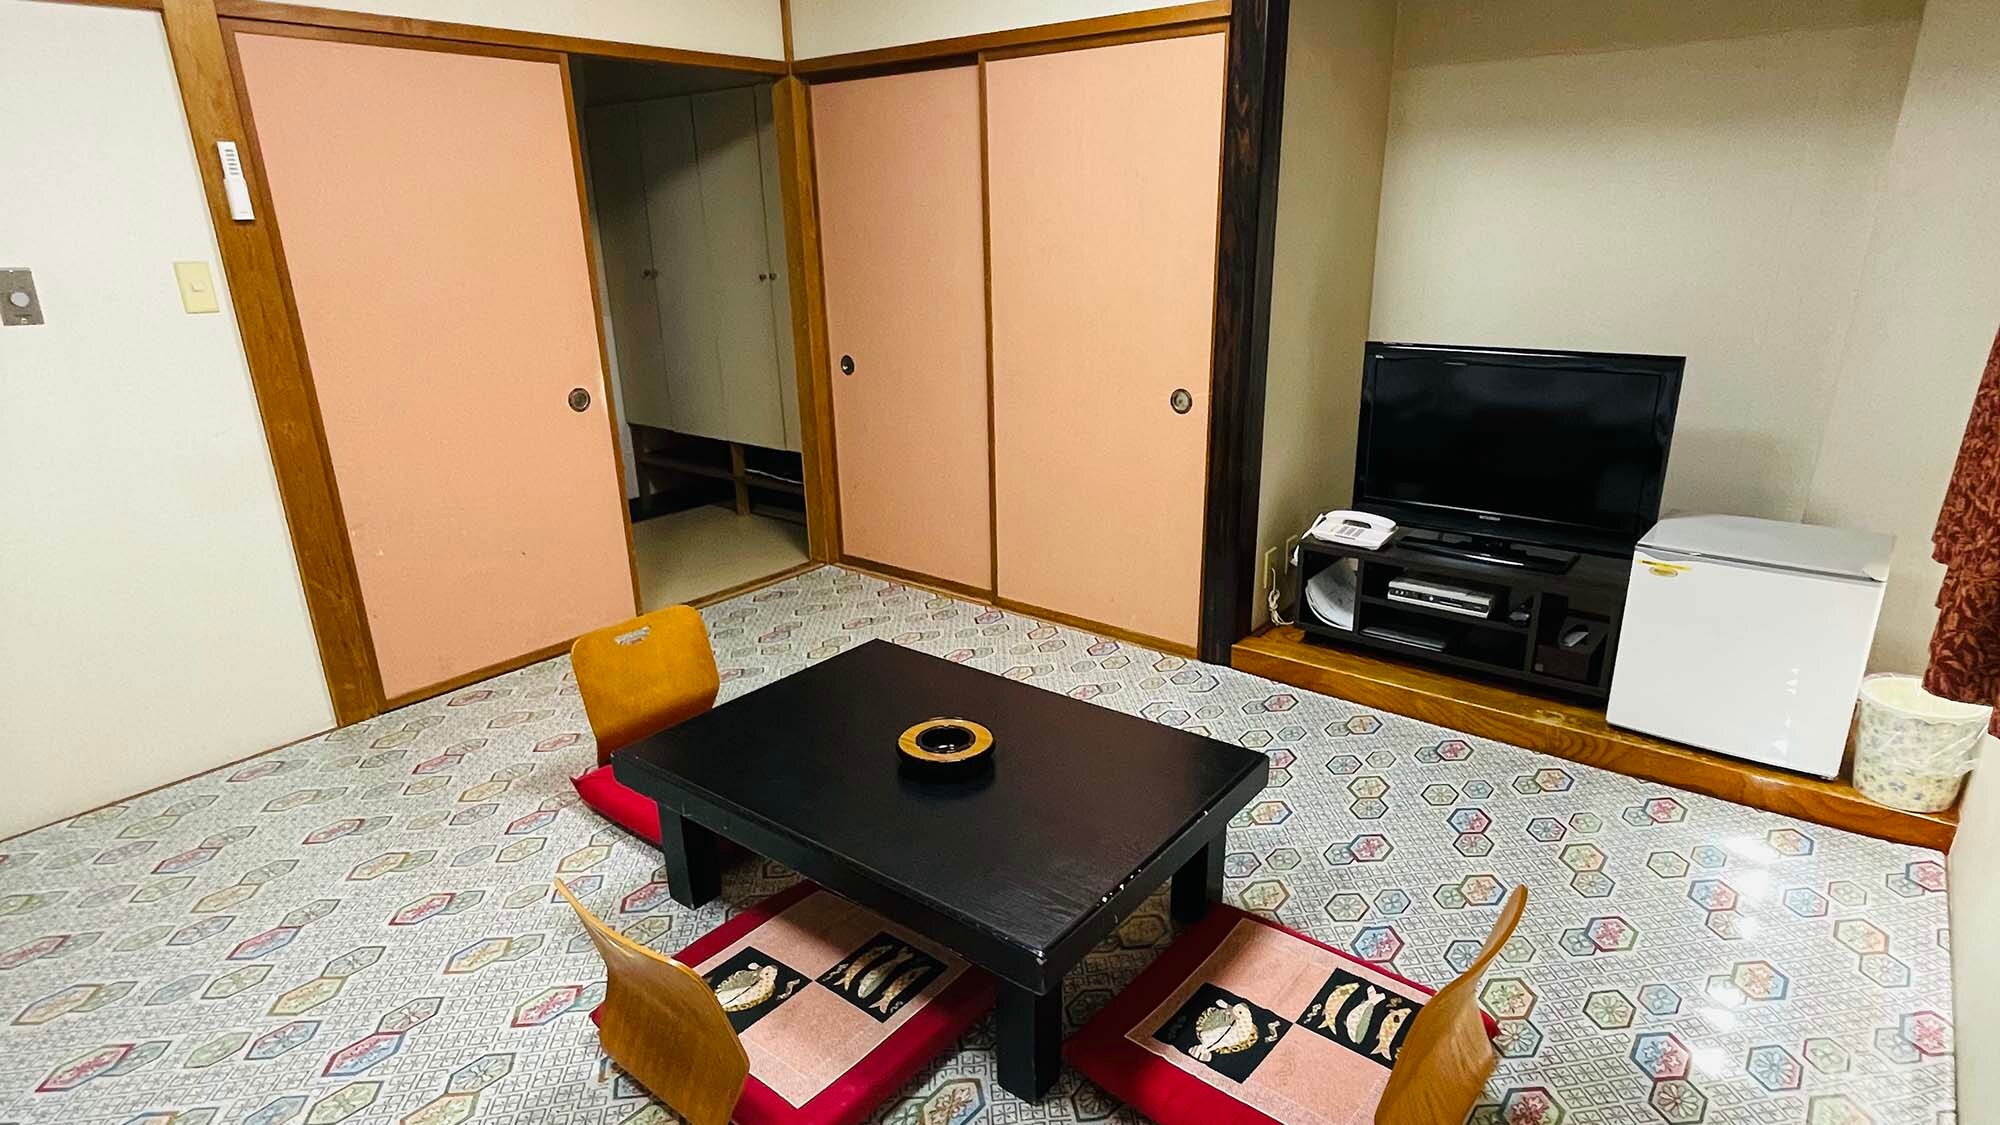 ・ <ห้องสไตล์ญี่ปุ่น> พักผ่อนในห้องสไตล์ญี่ปุ่น เหมาะสำหรับครอบครัวและกลุ่ม!